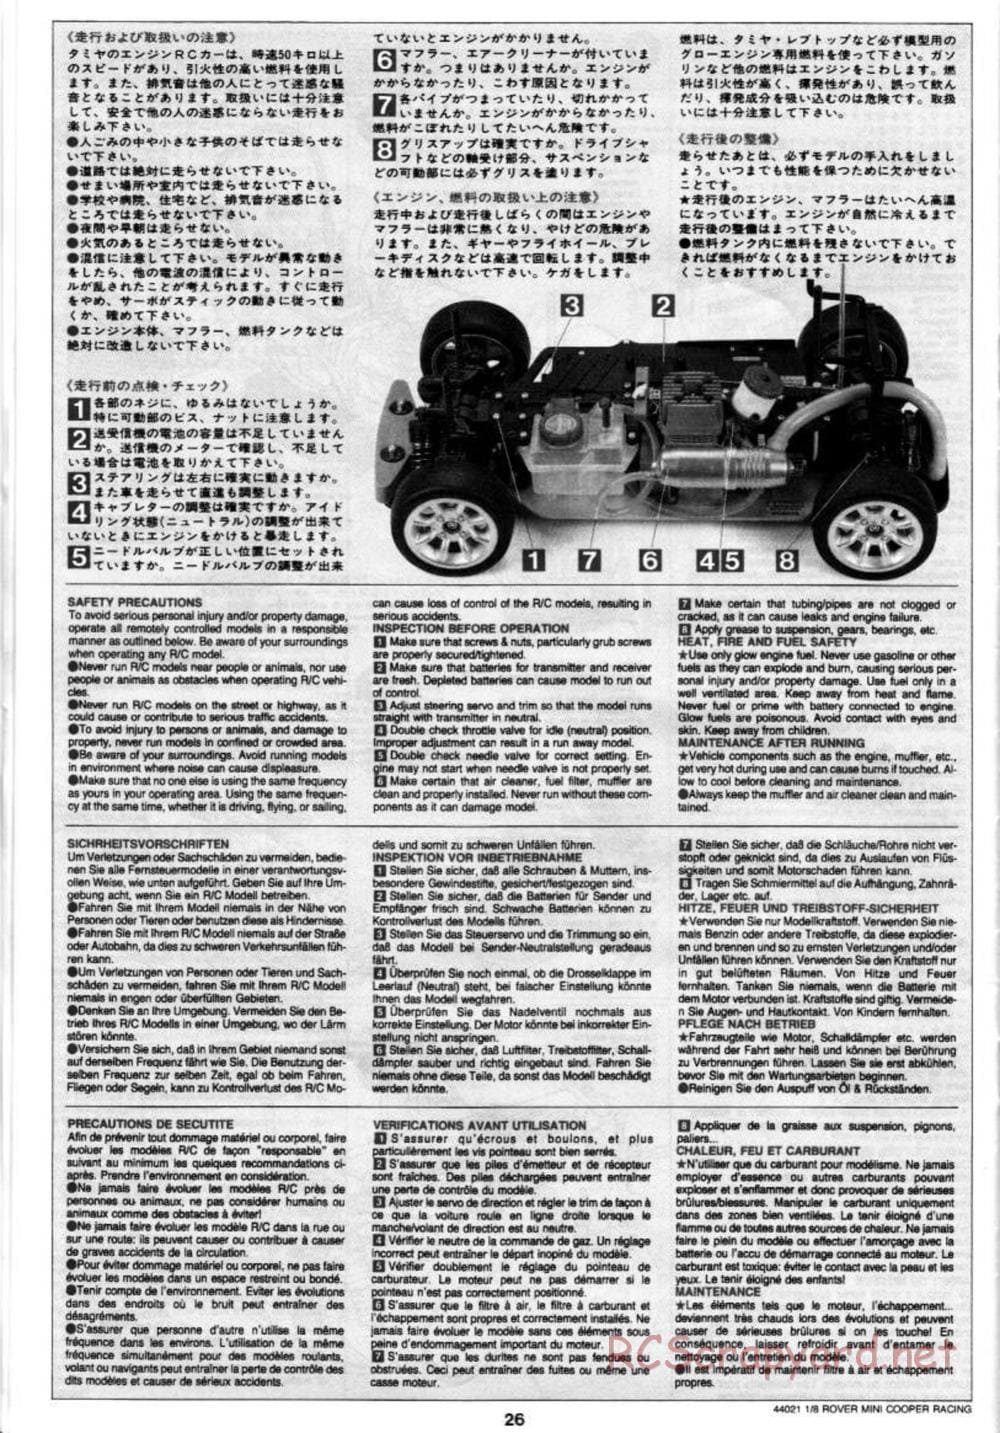 Tamiya - Rover Mini Cooper Racing - TG10 Mk.1 Chassis - Manual - Page 26